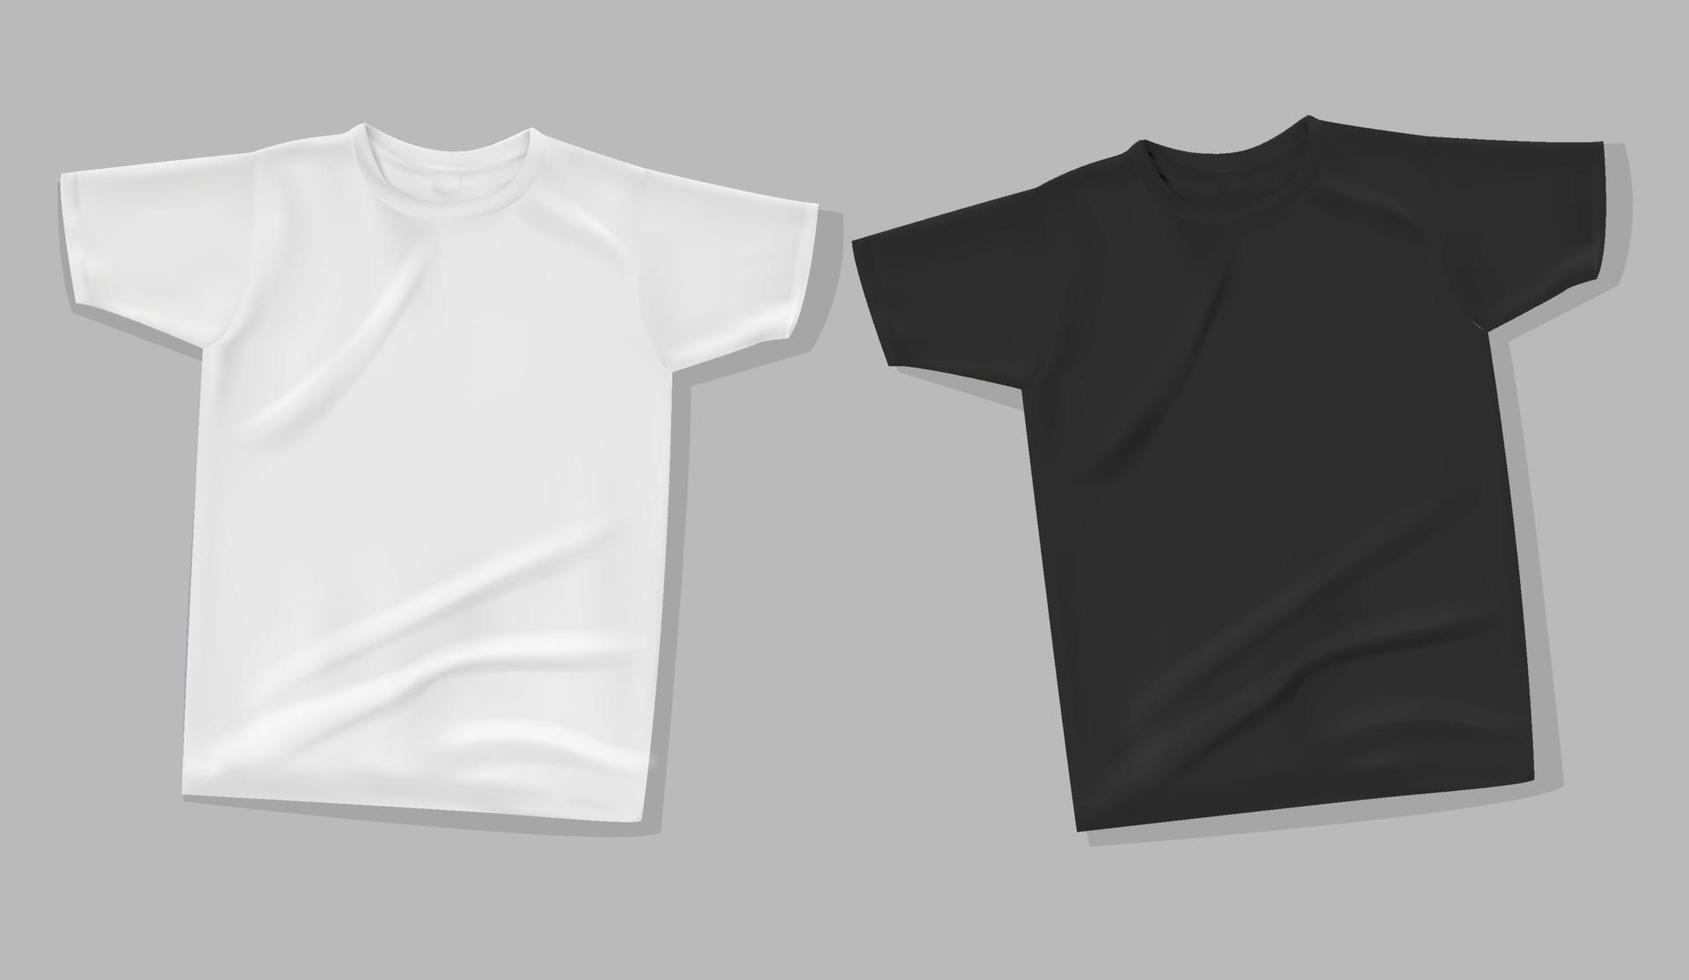 chemise maquette sur fond gris. modèle de t-shirt. version blanche et noire, design avant. vecteur